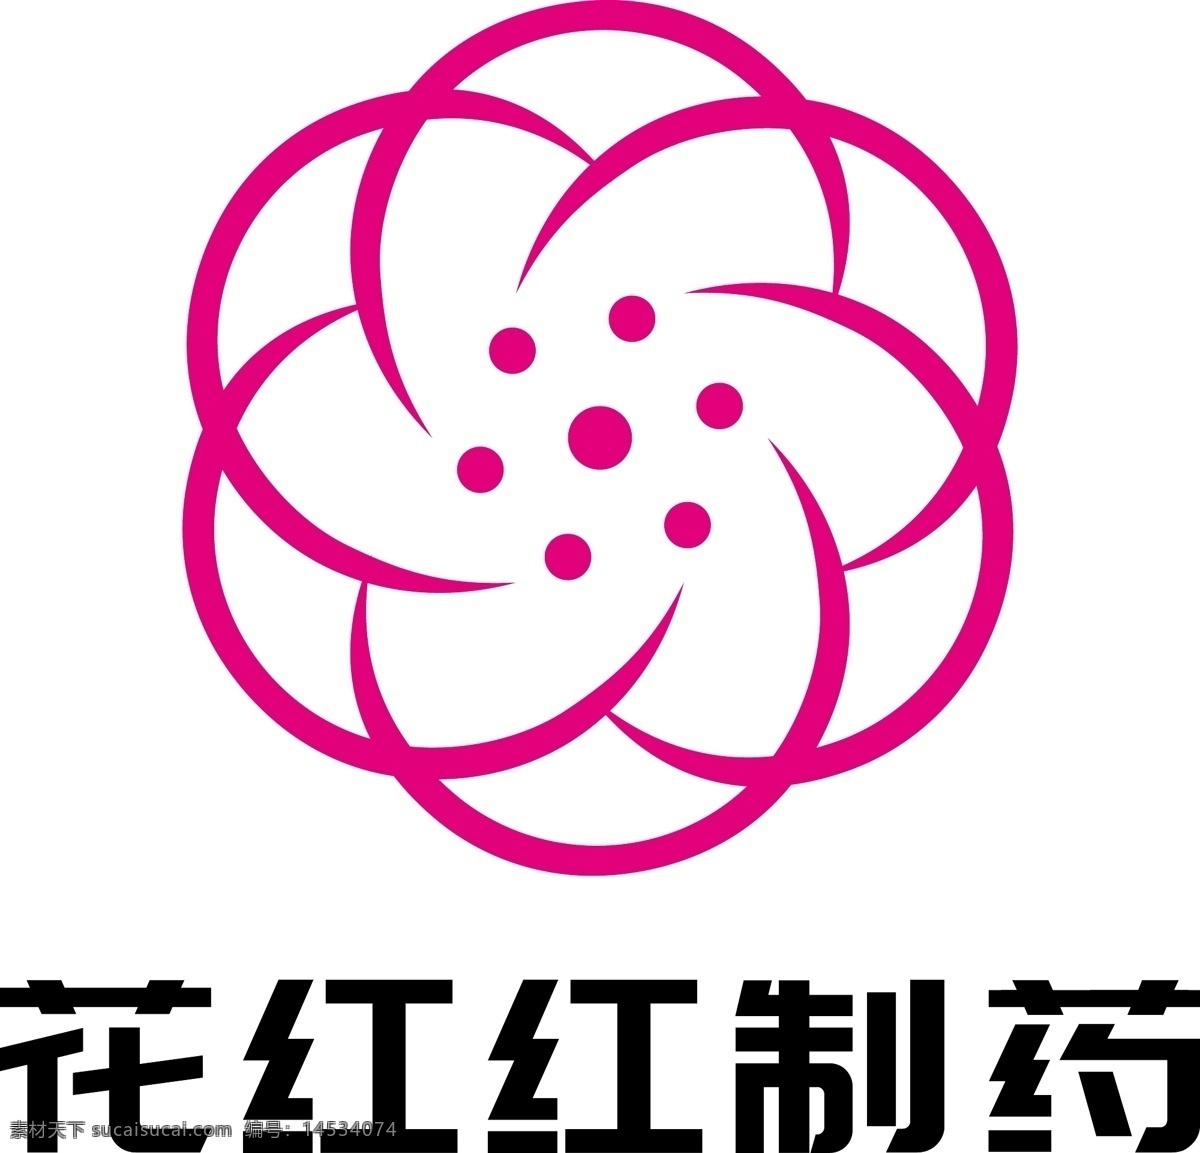 花 红红 制药 医药 医疗 logo 医药logo 医疗logo 医美logo 药品logo logo设计 企业logo 标志